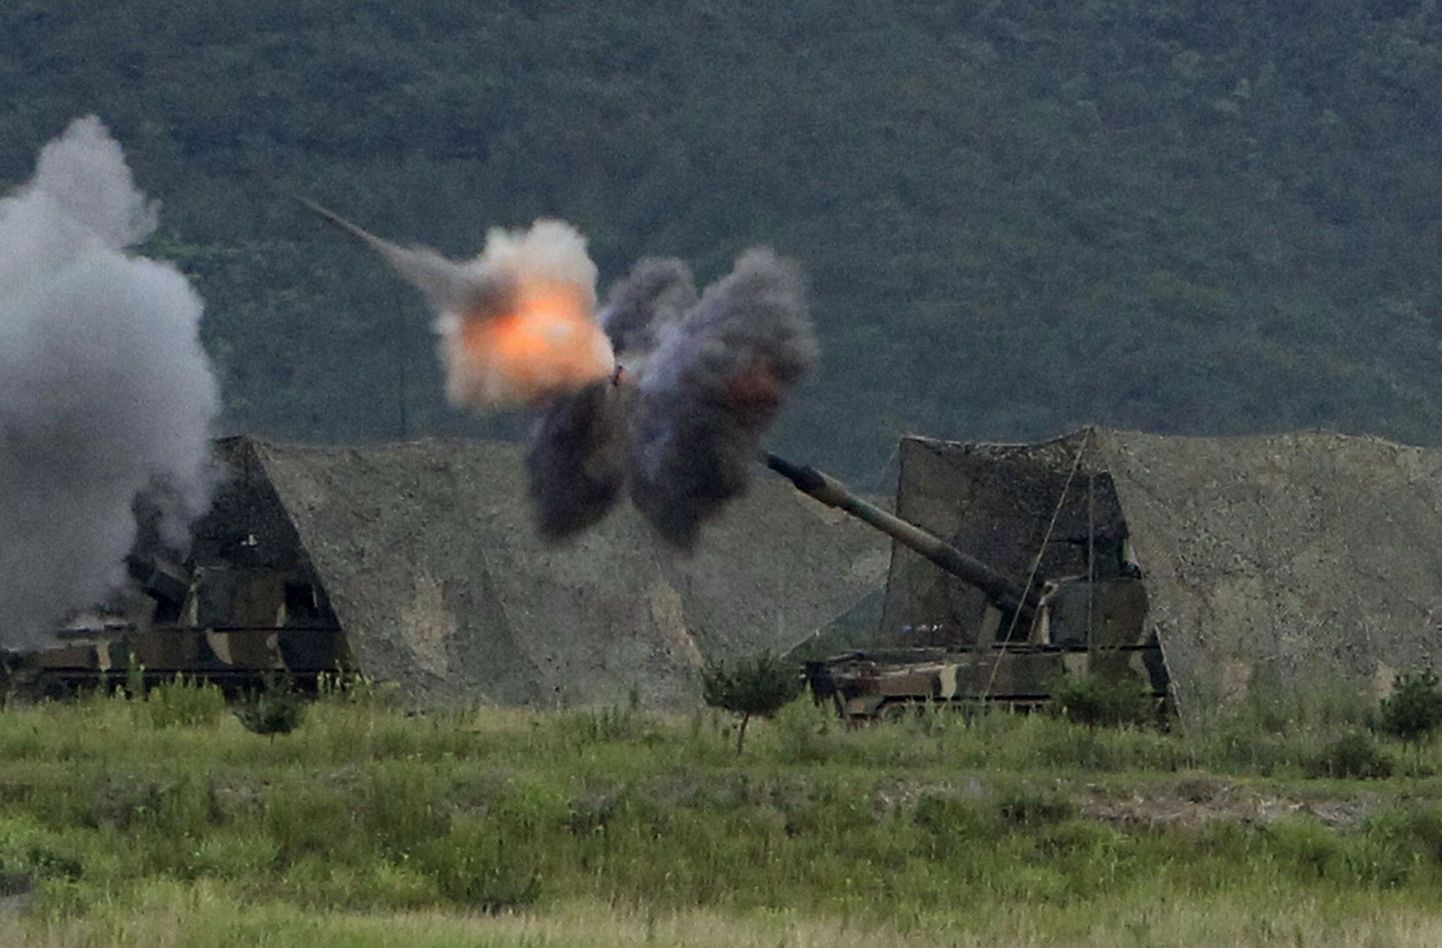 Lõuna-Korea liikursuurtükid K9 Thunder (Kõu).